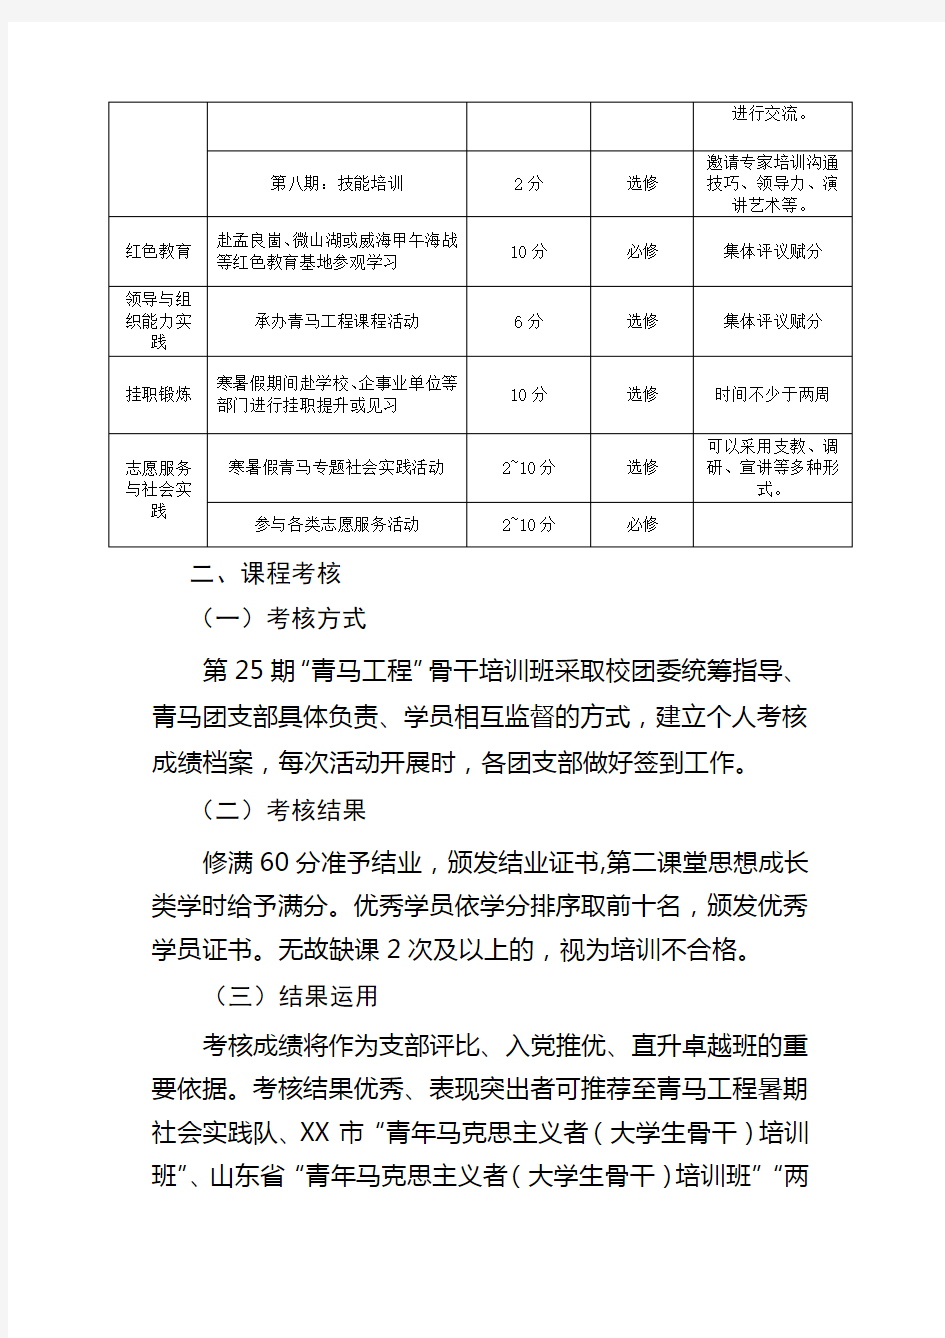 中国石油大学第25期“青年马克思主义者培养工程”骨干培训班培养方案【模板】